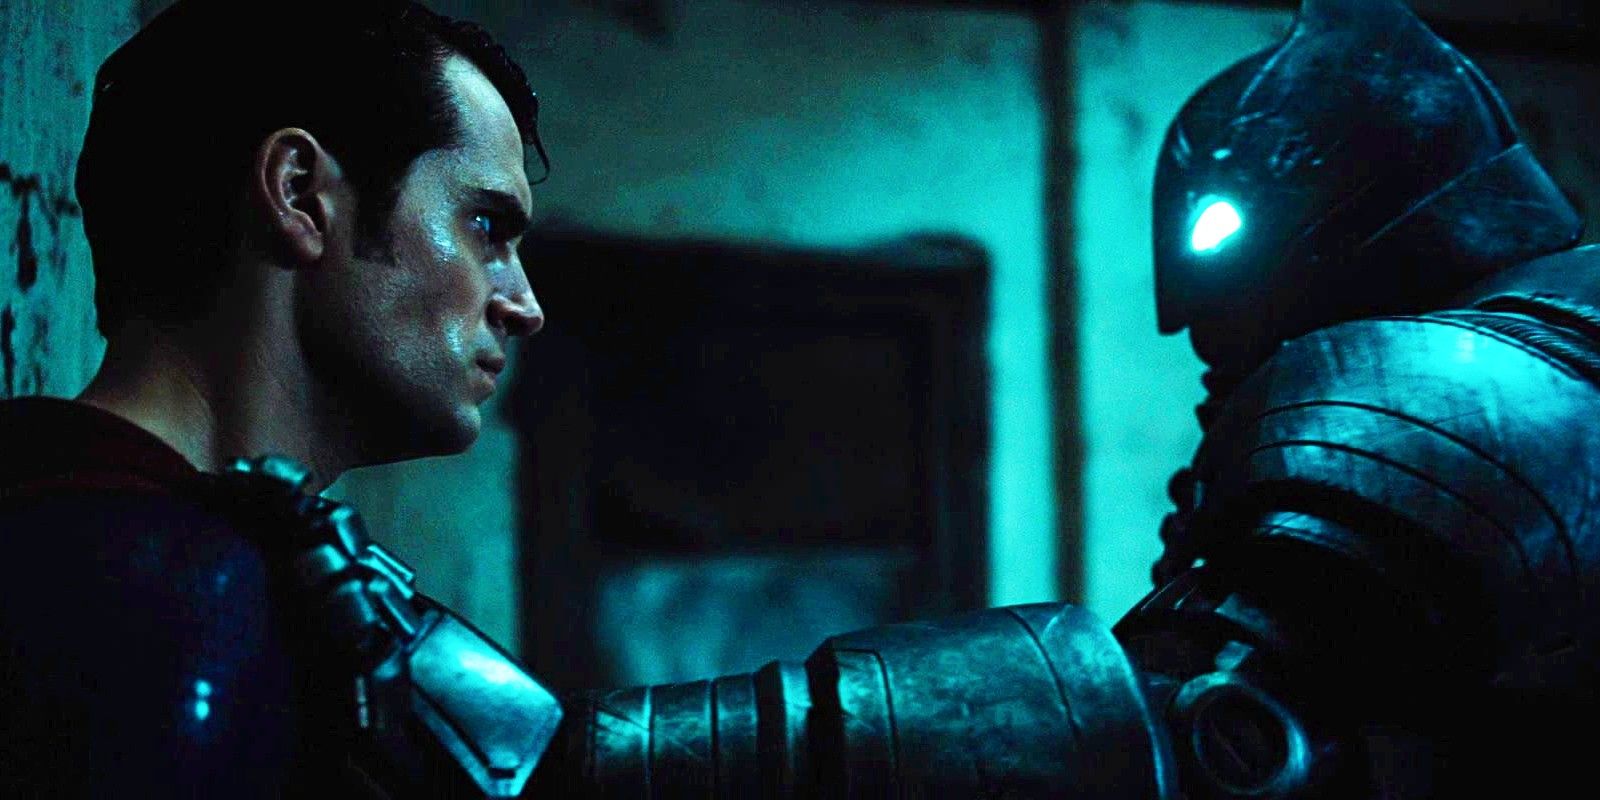 BVS Zack Snyder Hampir Mendapat Rating R Karena MPAA Mengatakan “Kami Hanya Tidak Suka Ide Batman Melawan Superman”